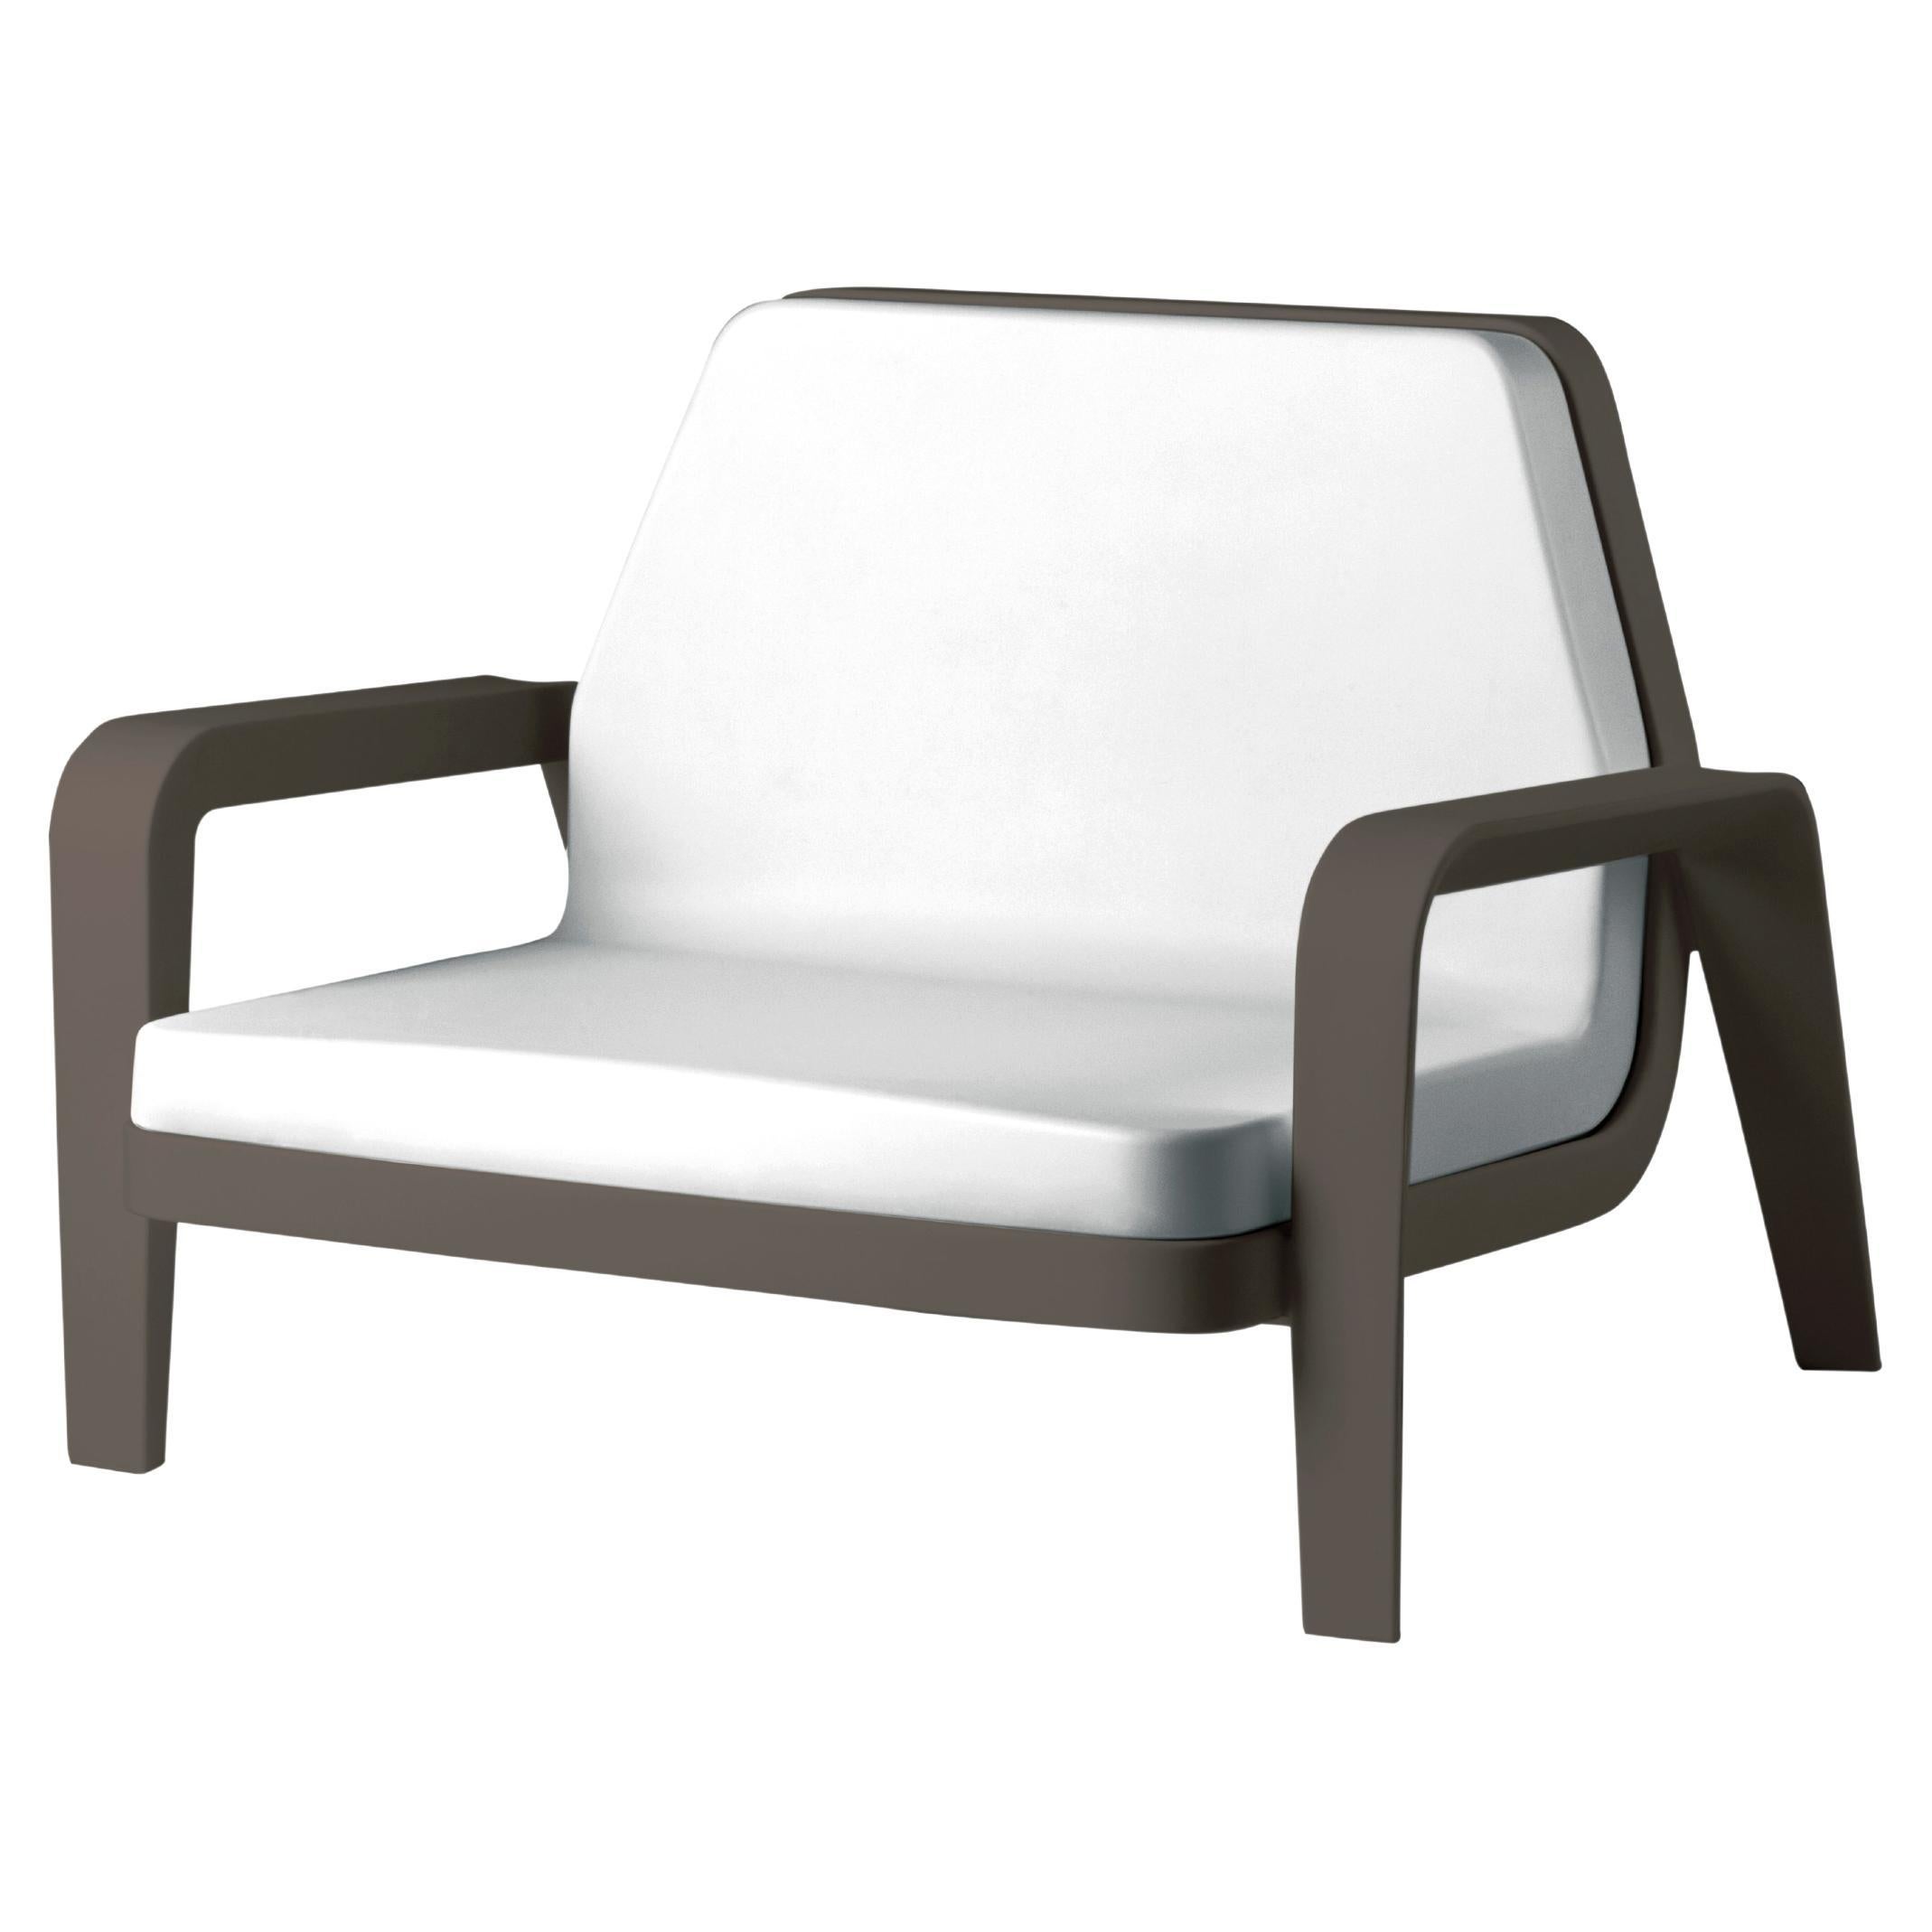 Slide Design America Sessel aus weichem weißem Stoff mit schokoladenbraunem Rahmen